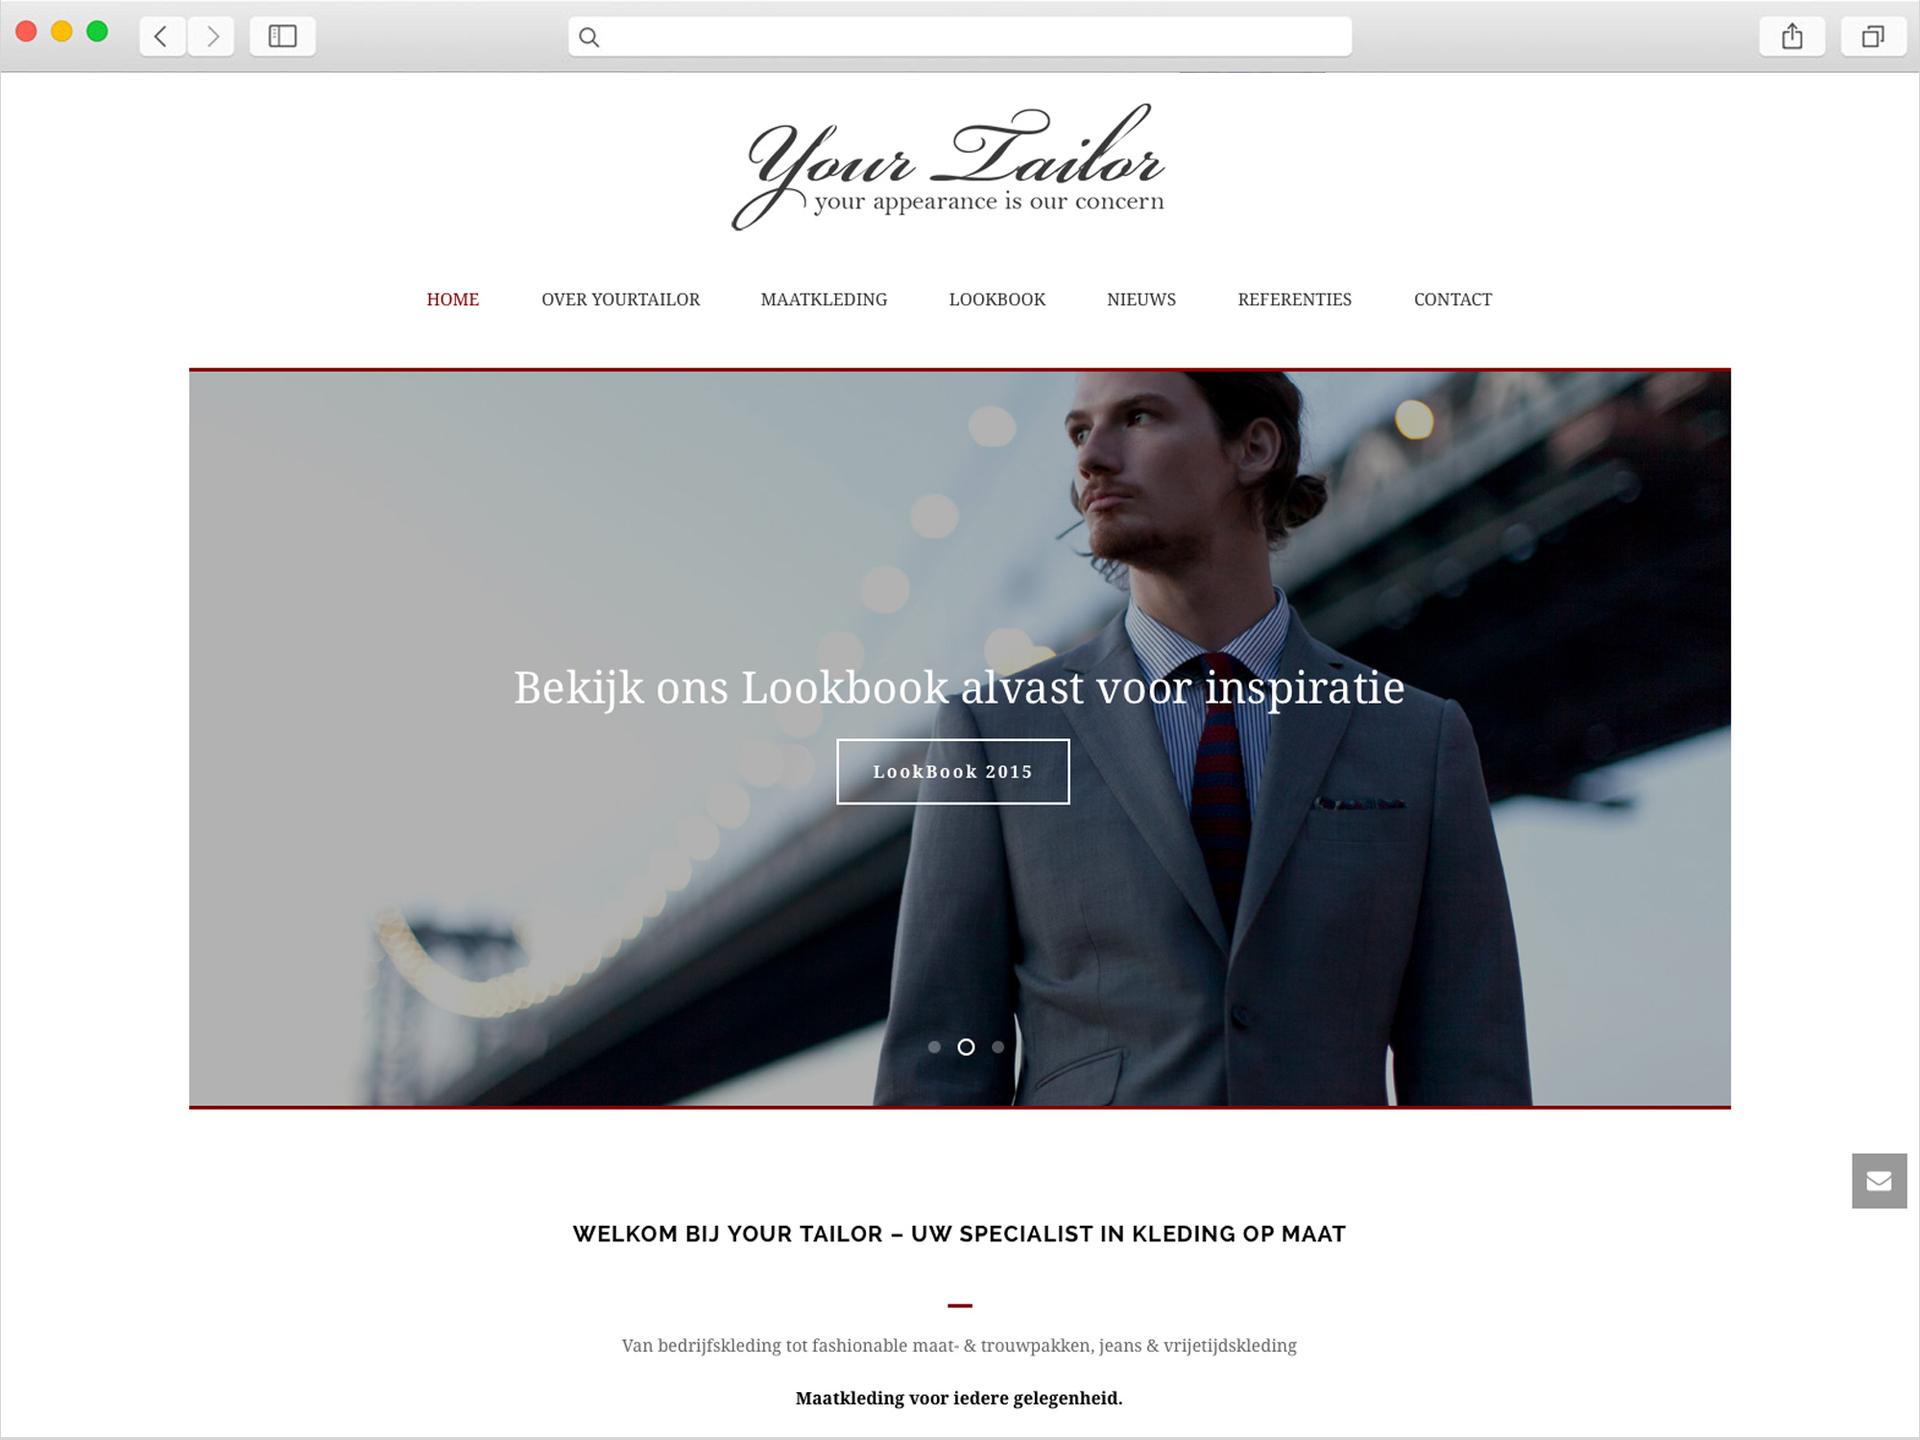 De website van Yourtailor